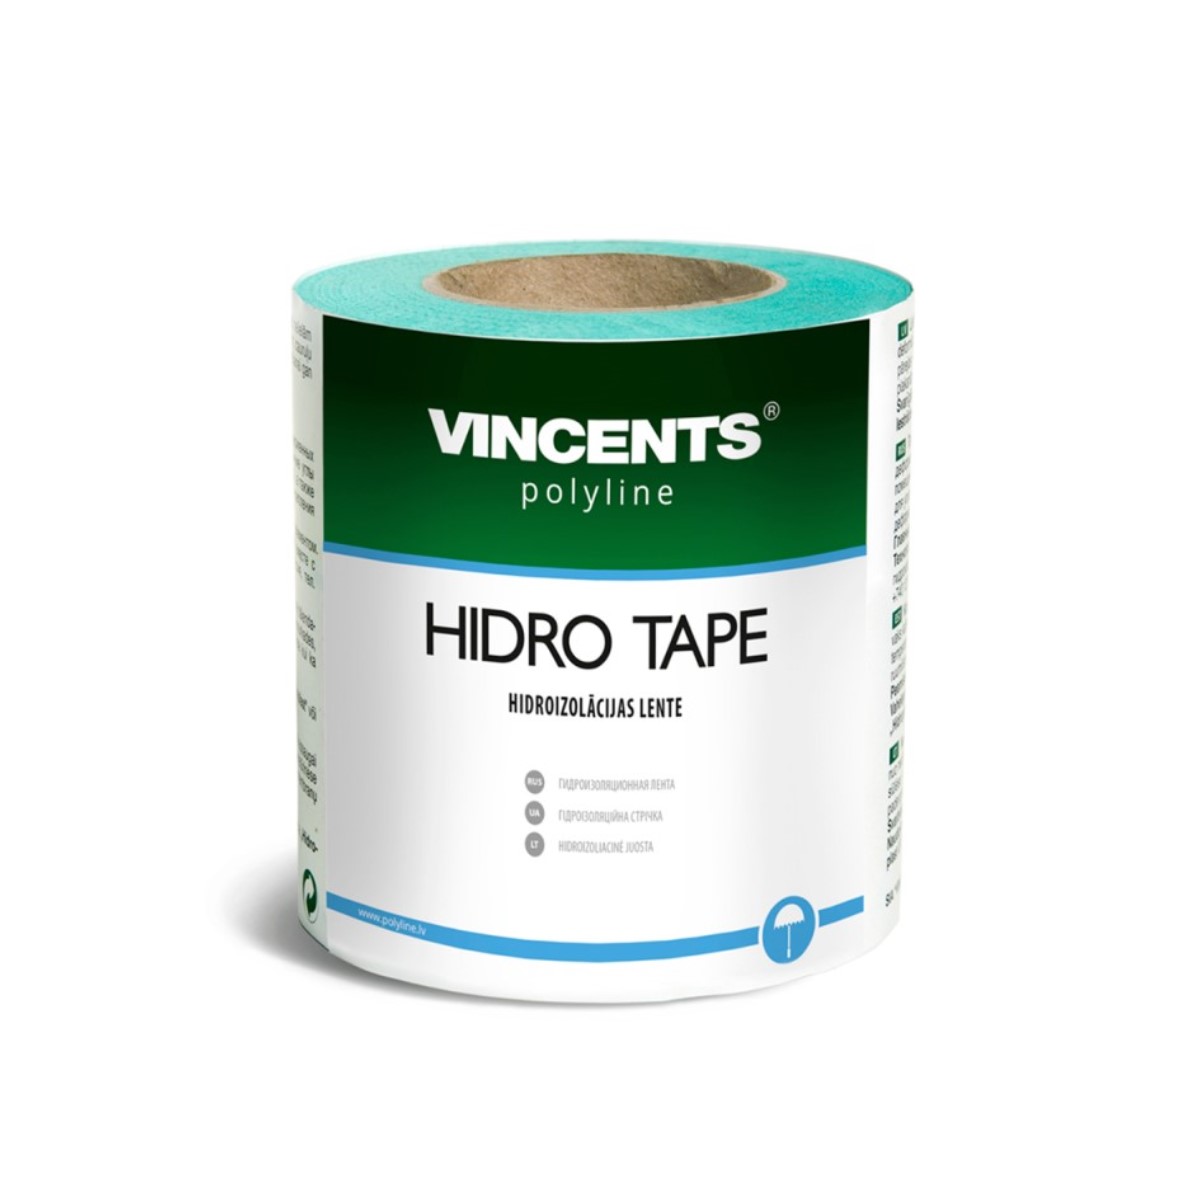 Vincents Polyline Hidro Tape Hidroizolācijas lente 10cmx25m